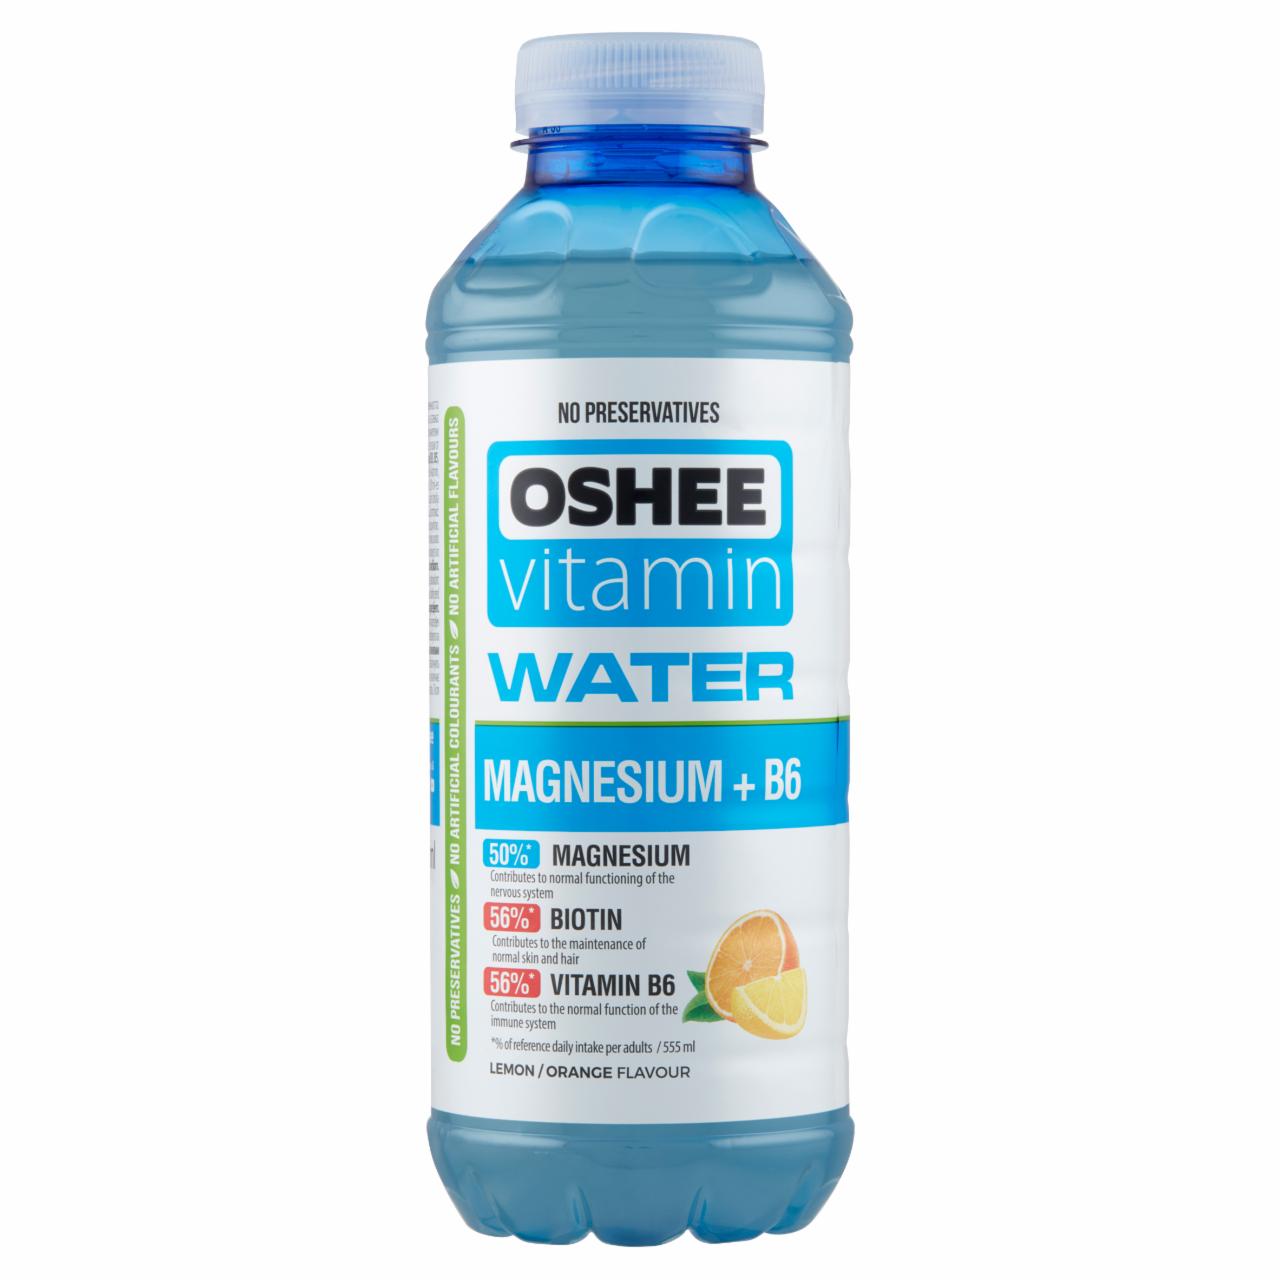 Képek - Oshee Witamin Water Magnesium + B6 szénsavmentes citrom-narancs ízesítésű ital 555 ml